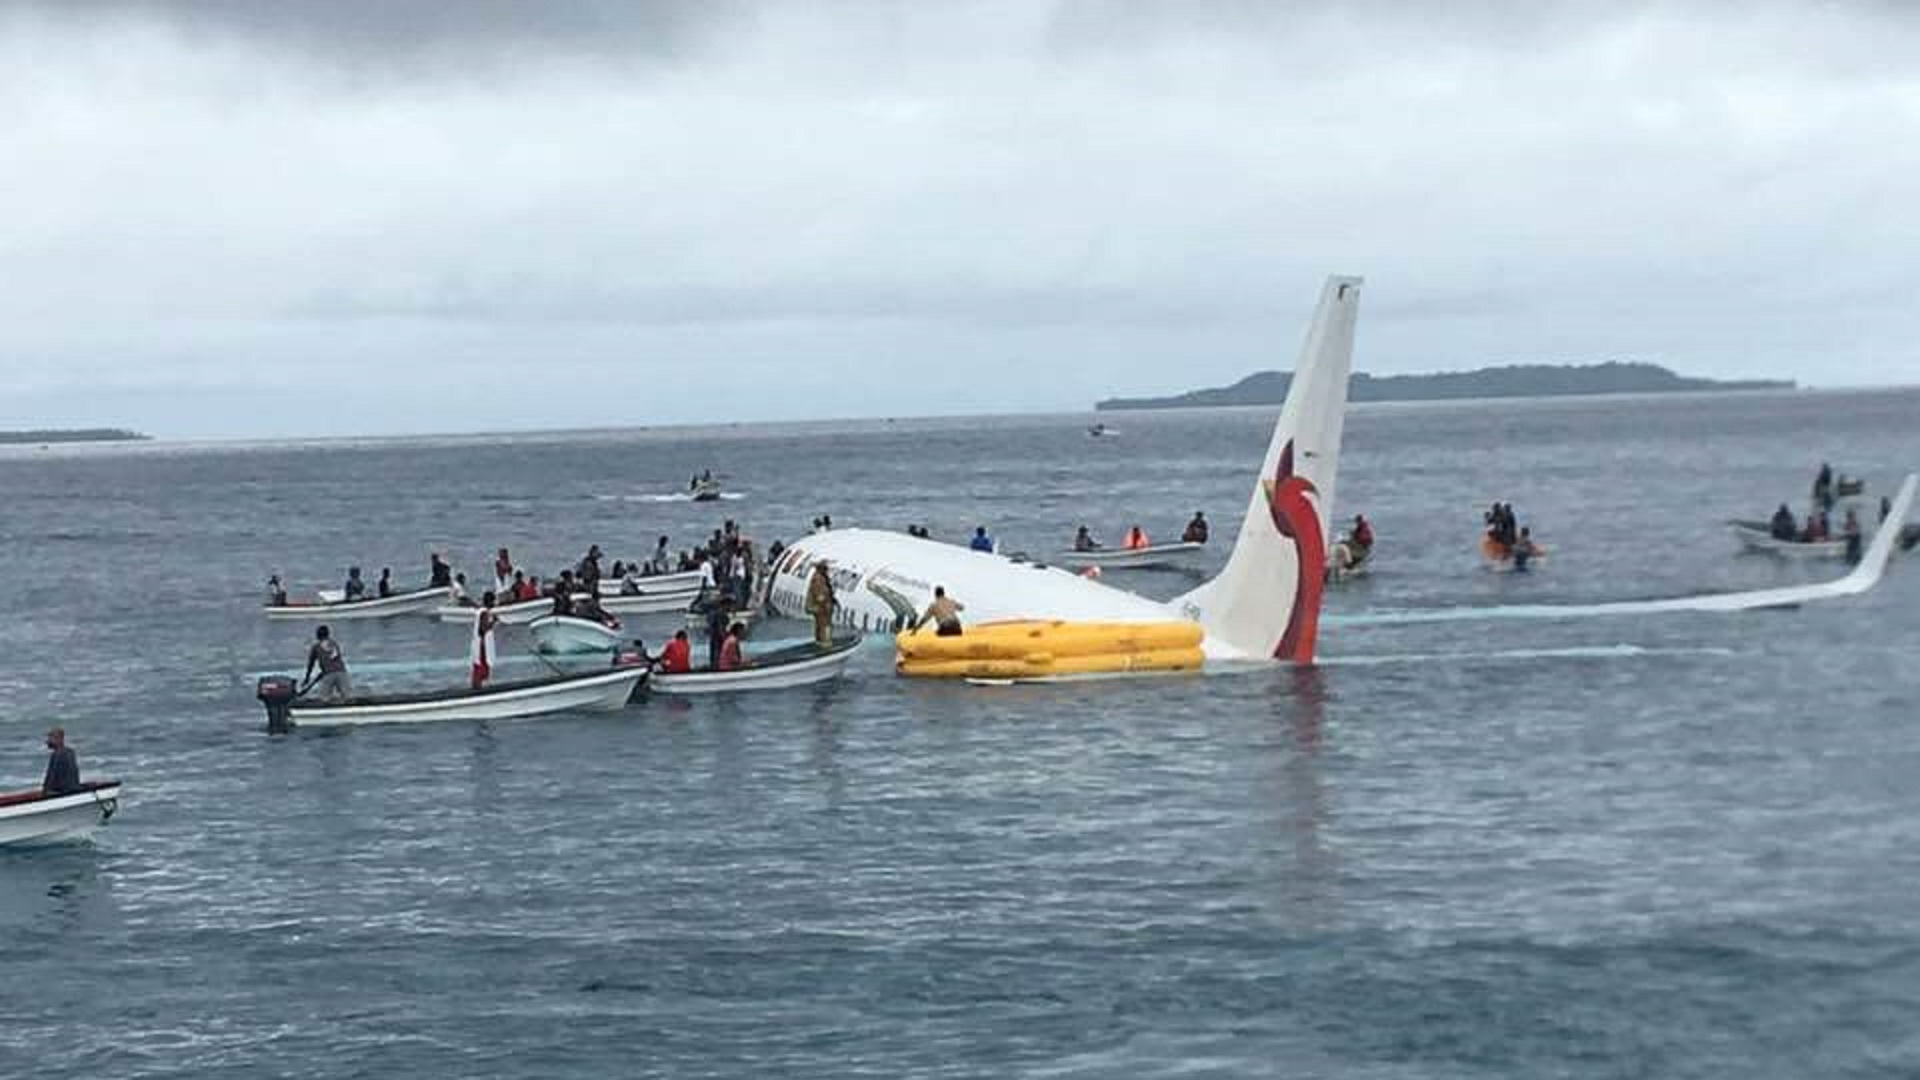 PX overshot runway into Chuuk Lagoon upon landing in FSM - EMTV Online1920 x 1080